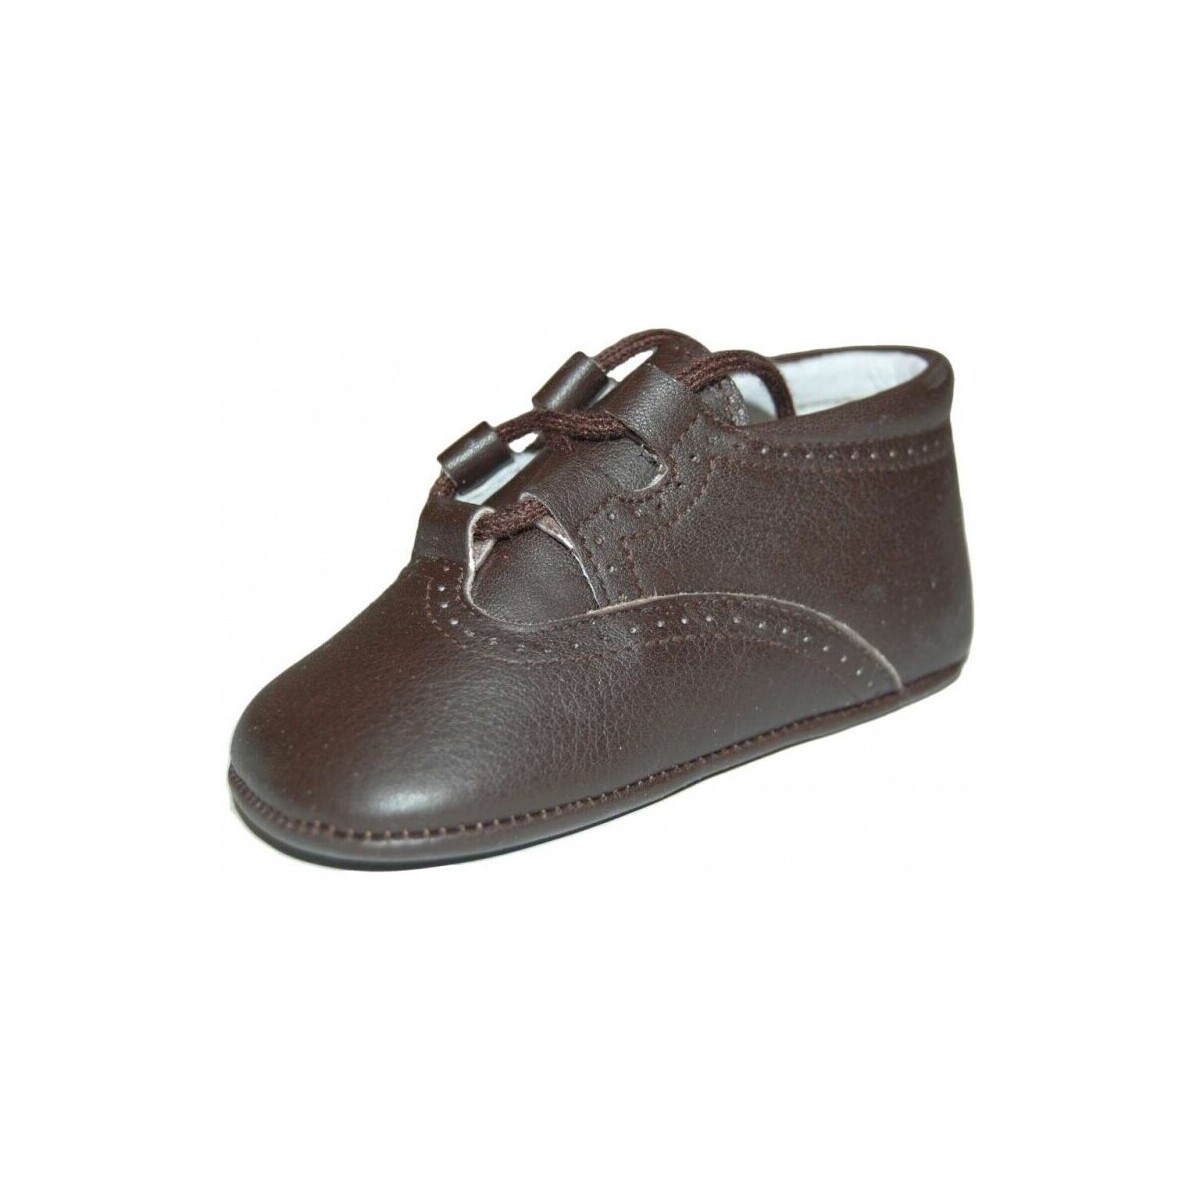 Παπούτσια Αγόρι Σοσονάκια μωρού Colores 15957-15 Brown